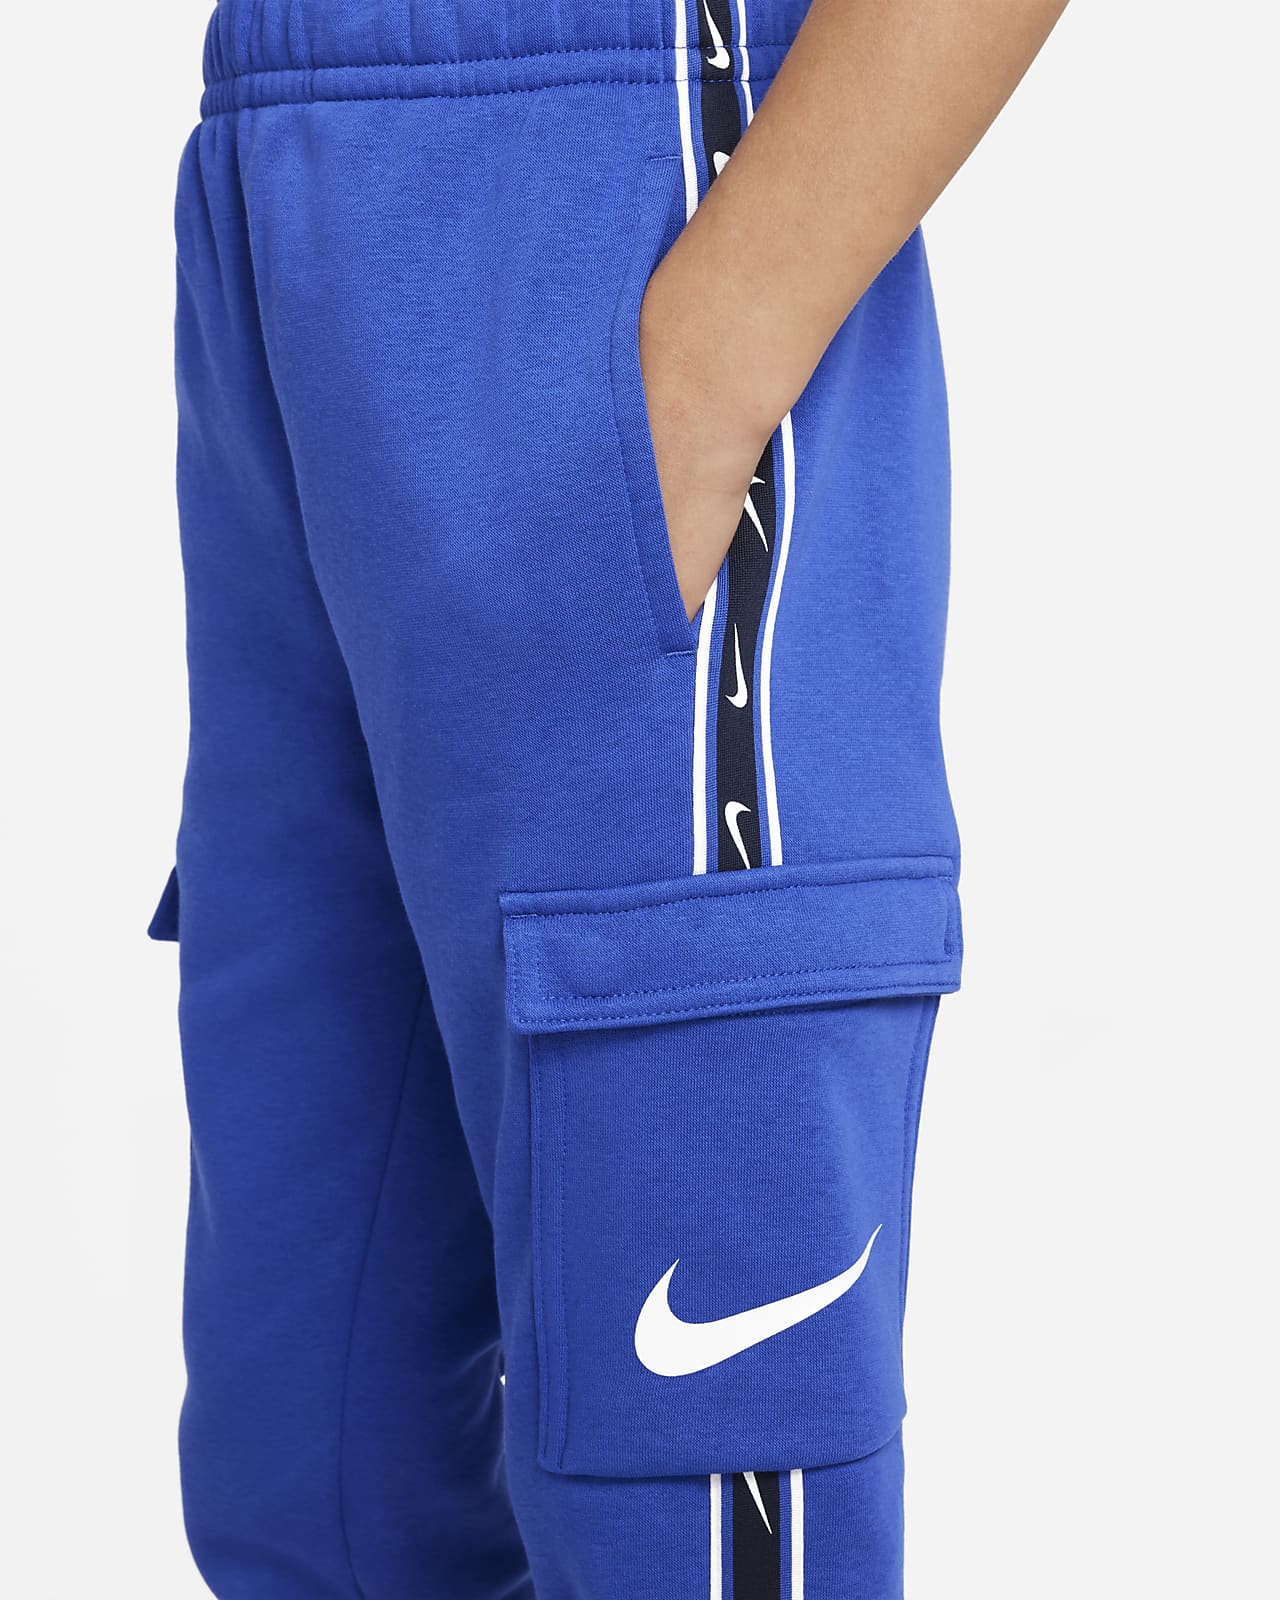 Duwen Overleven Leerling Nike Sportswear Repeat Older Kids' (Boys') Fleece Cargo Trousers. Nike LU